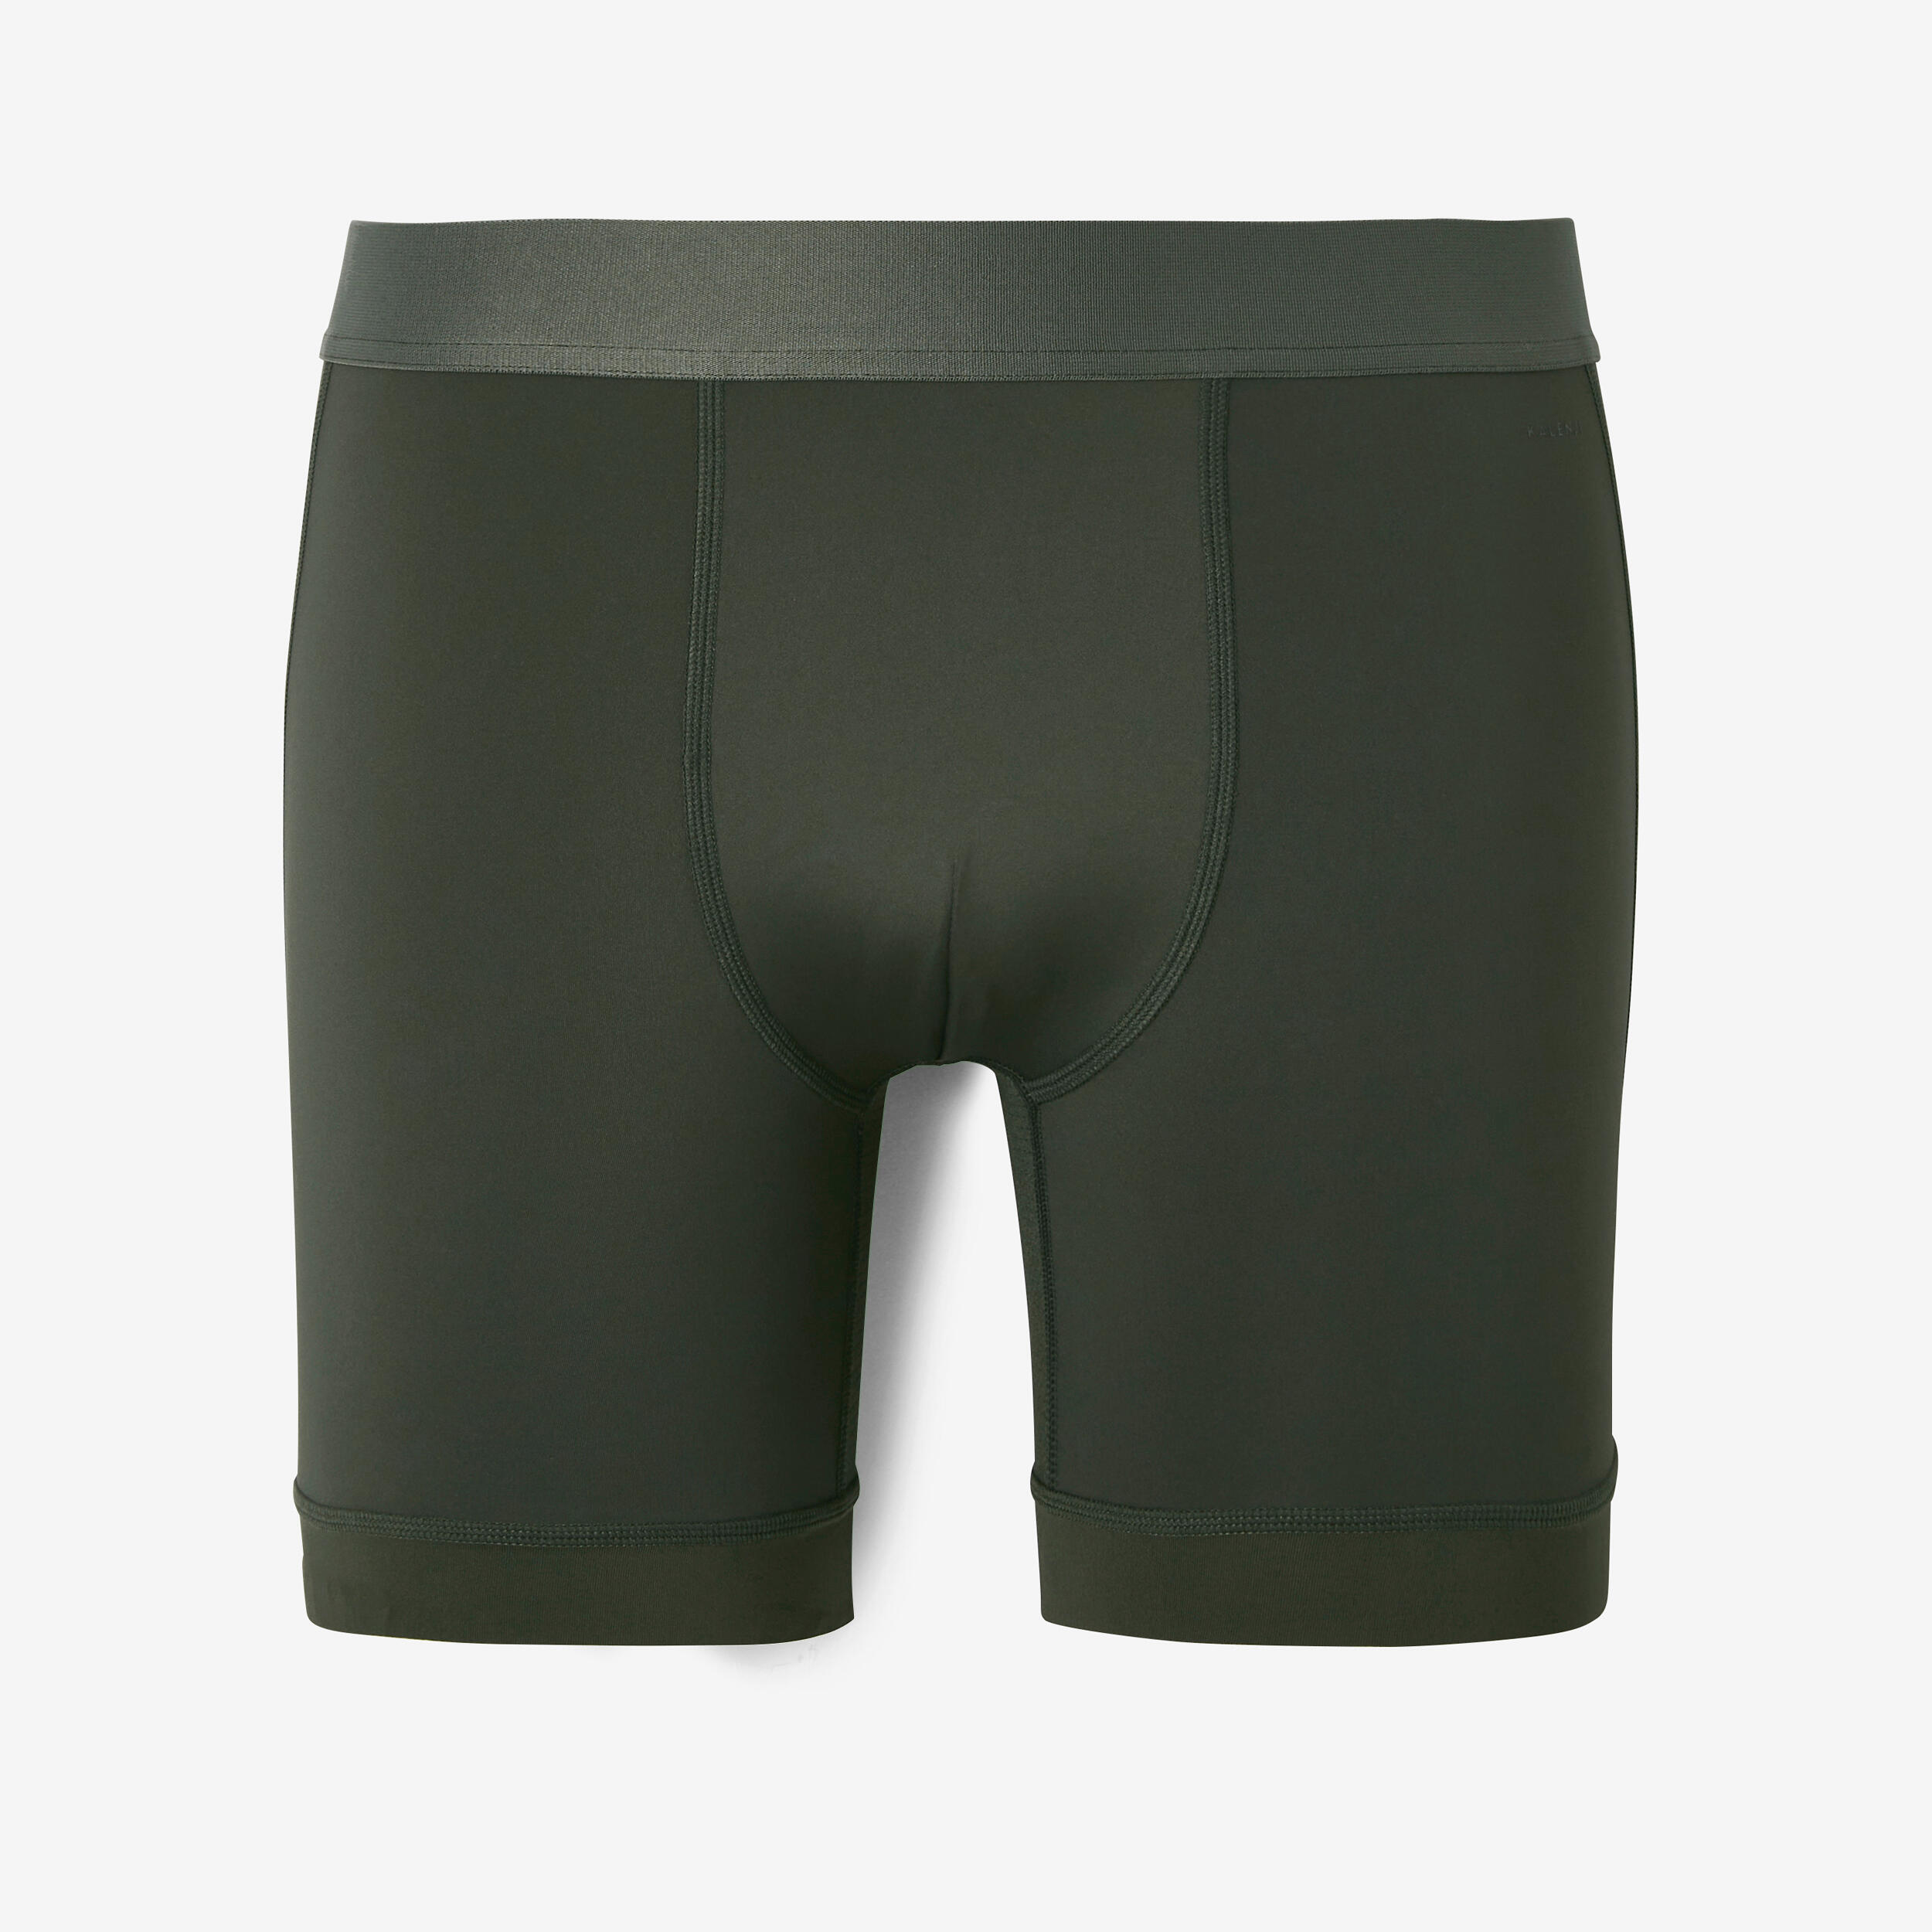 ROYALZ Boxer Homme Lot de 5 Ensemble sous-vêtements Shorts Classiques sans Couture pour Les Sports et Les Loisirs 5 Paires 95% Coton / 5% Elasthanne 